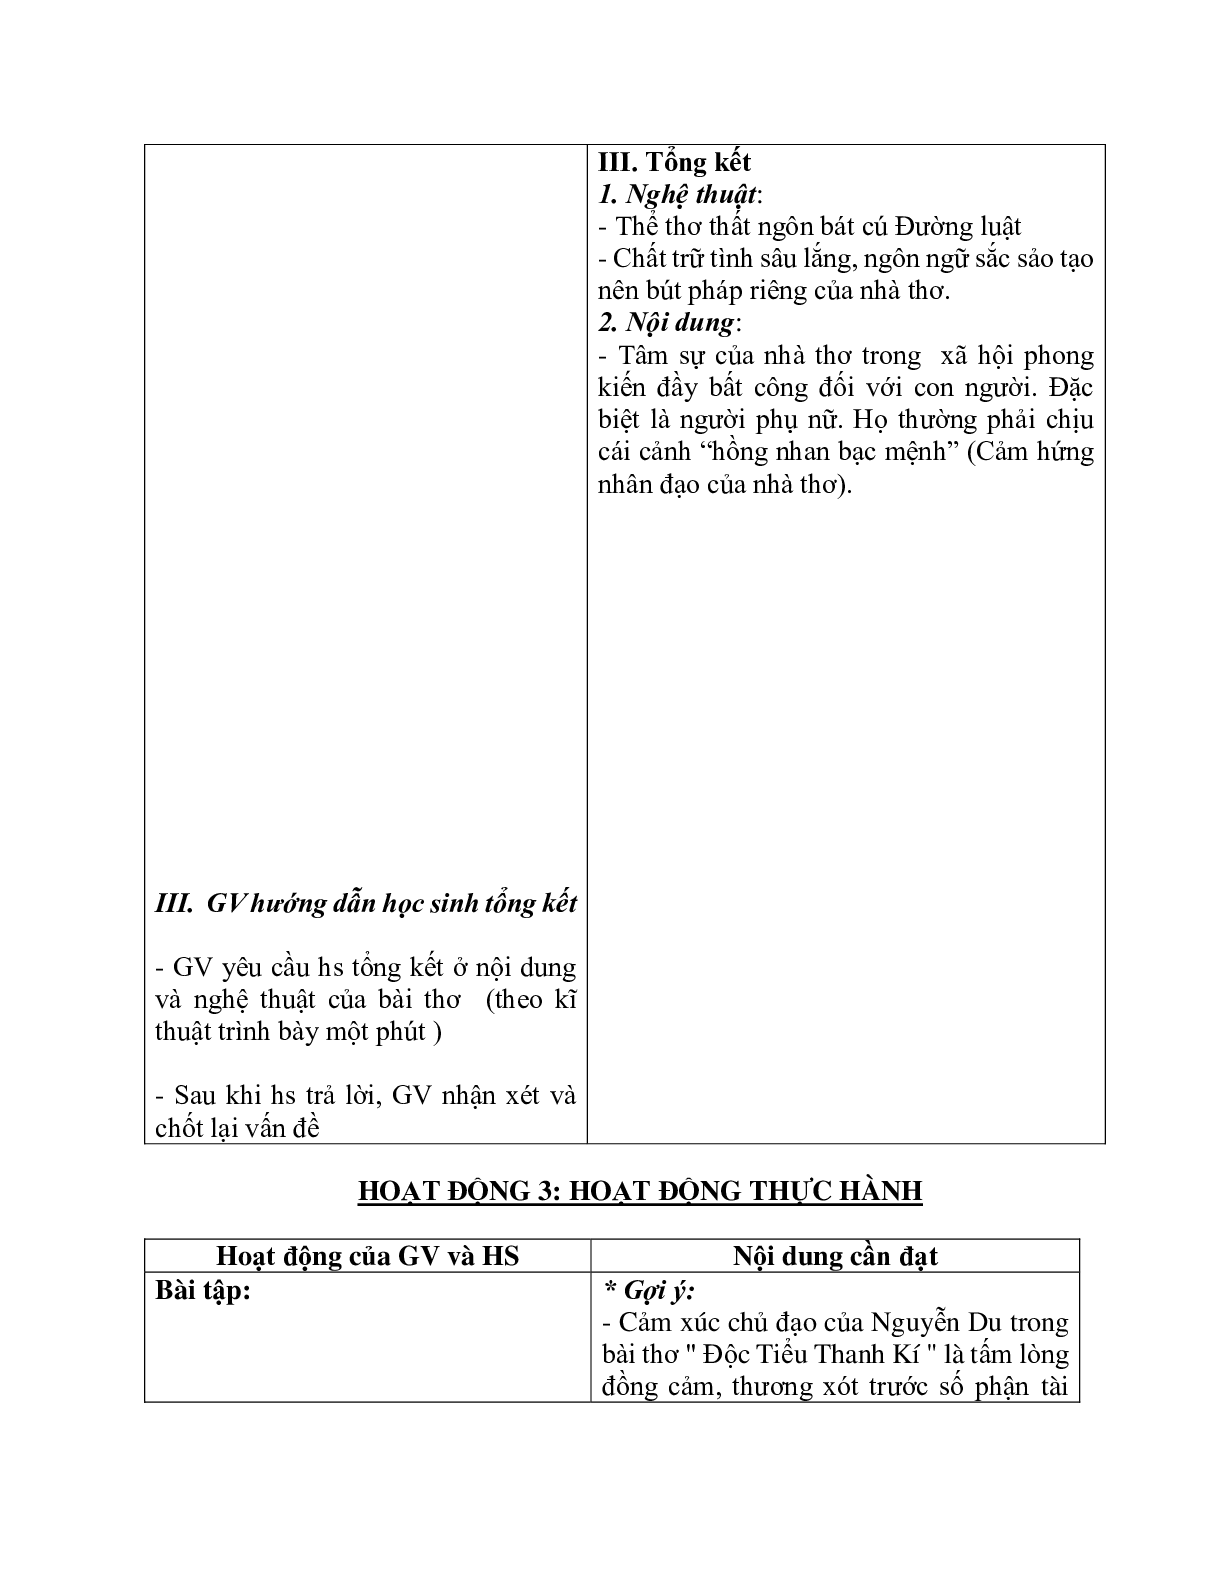 Giáo án ngữ văn lớp 10 Tiết 40: Đọc tiểu thanh kí (trang 5)